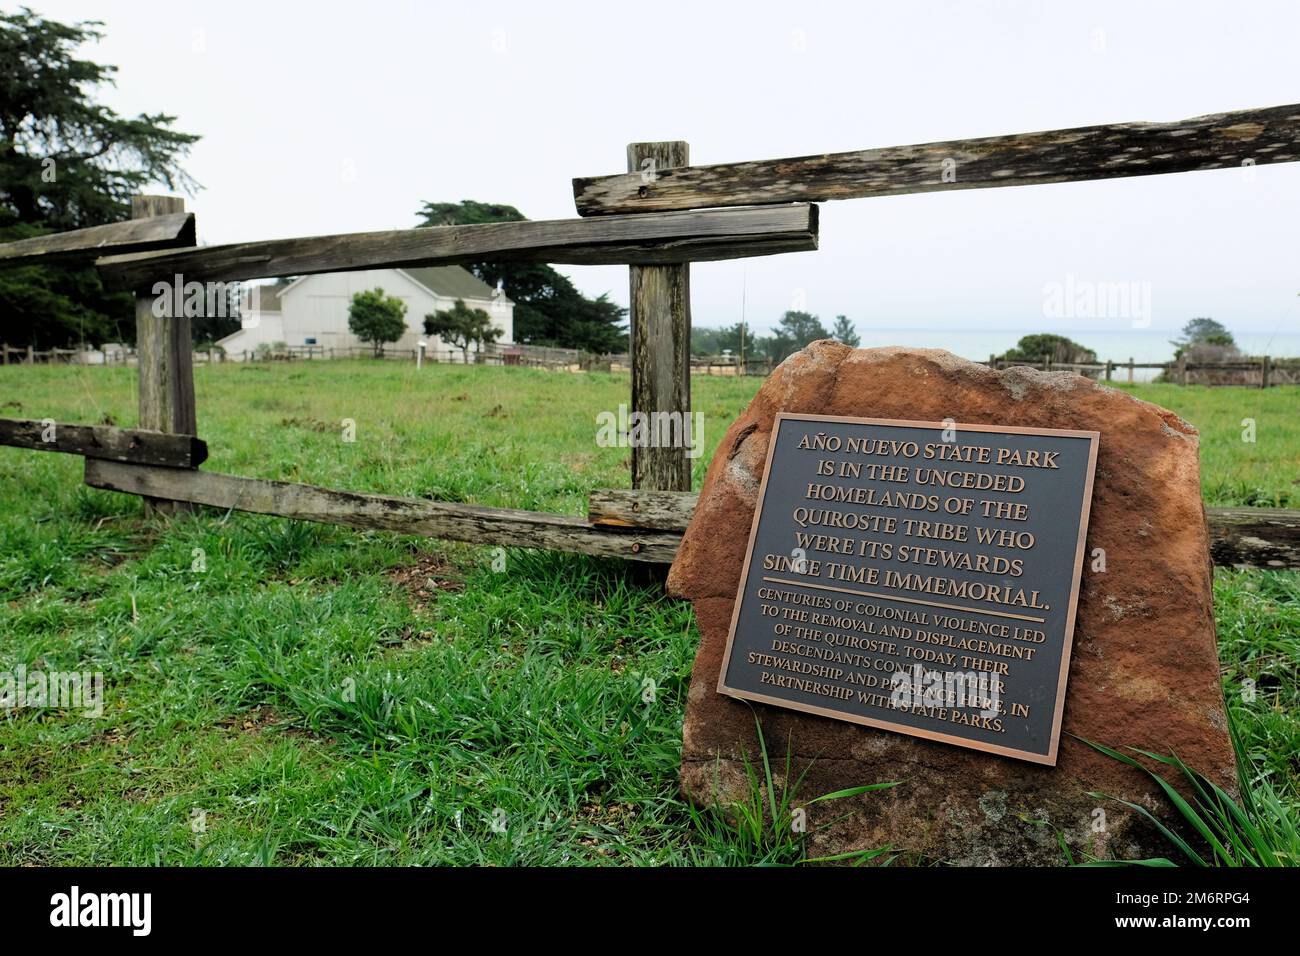 Anerkennung der einheimischen Landschaften im Año Nuevo State Park in San Mateo County, Kalifornien; Anerkennung der kolonialen Gewalt der Quiroste. Stockfoto